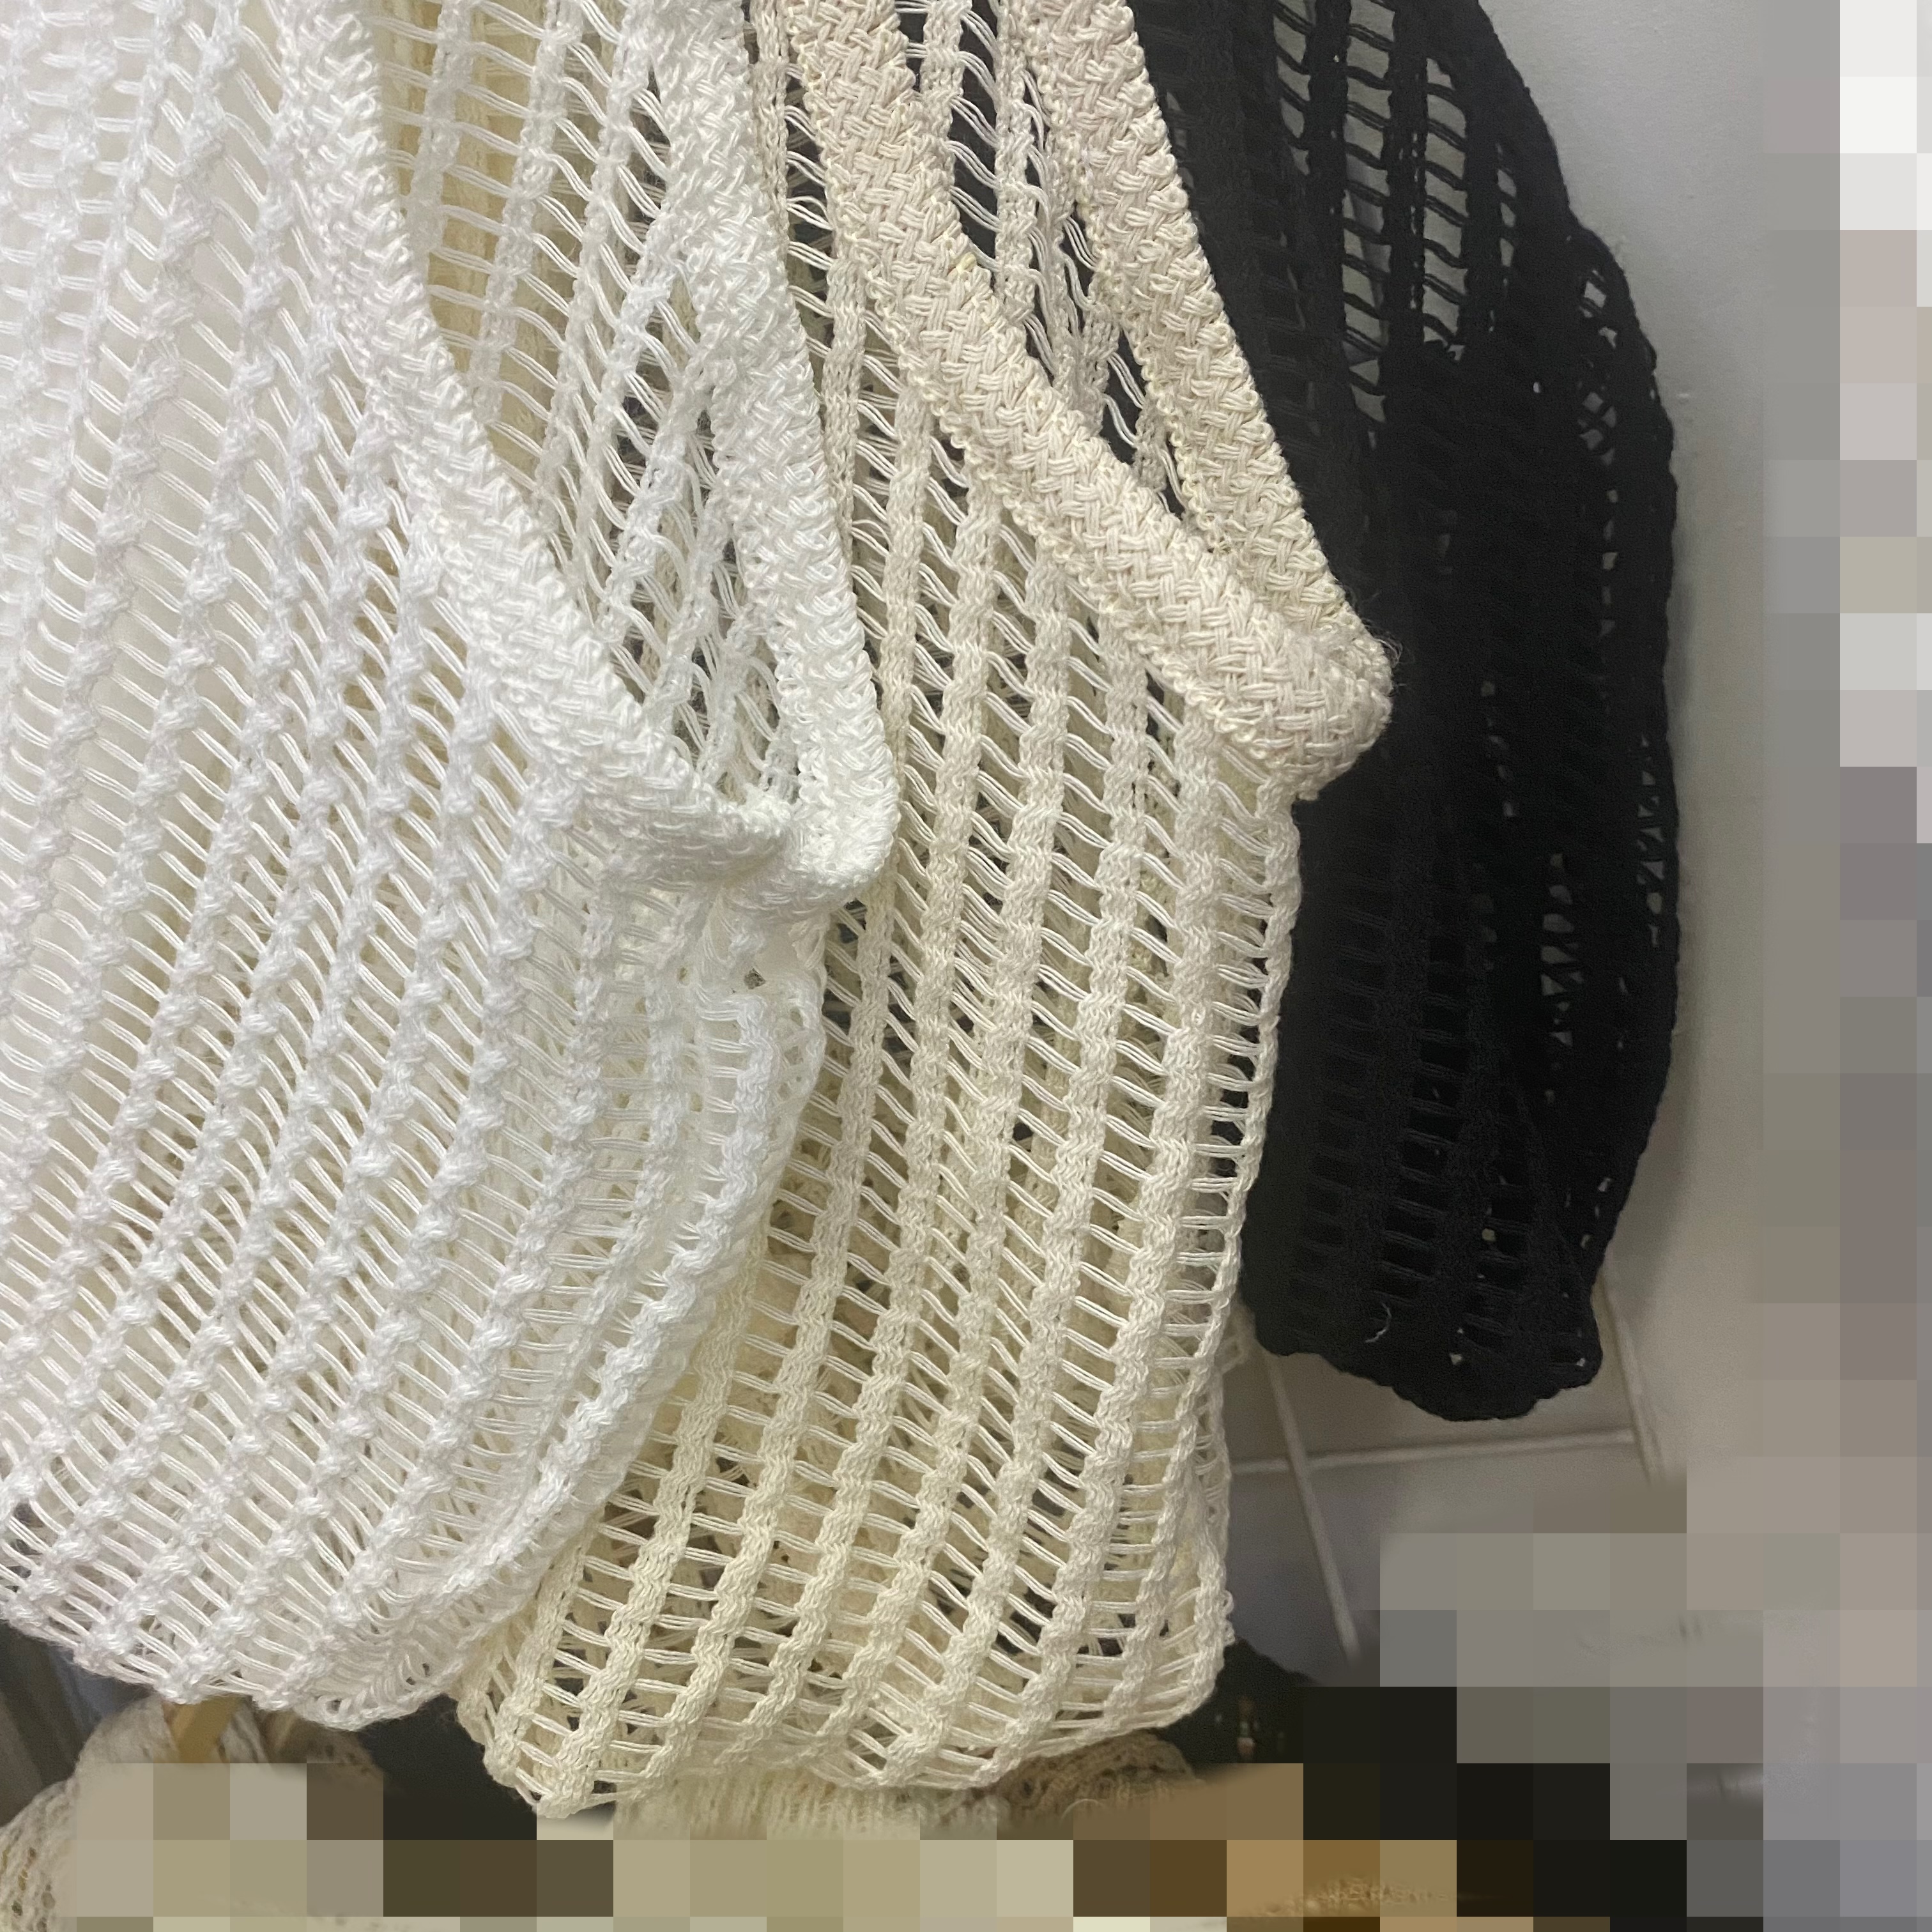 渔网针围巾的编织教程图片